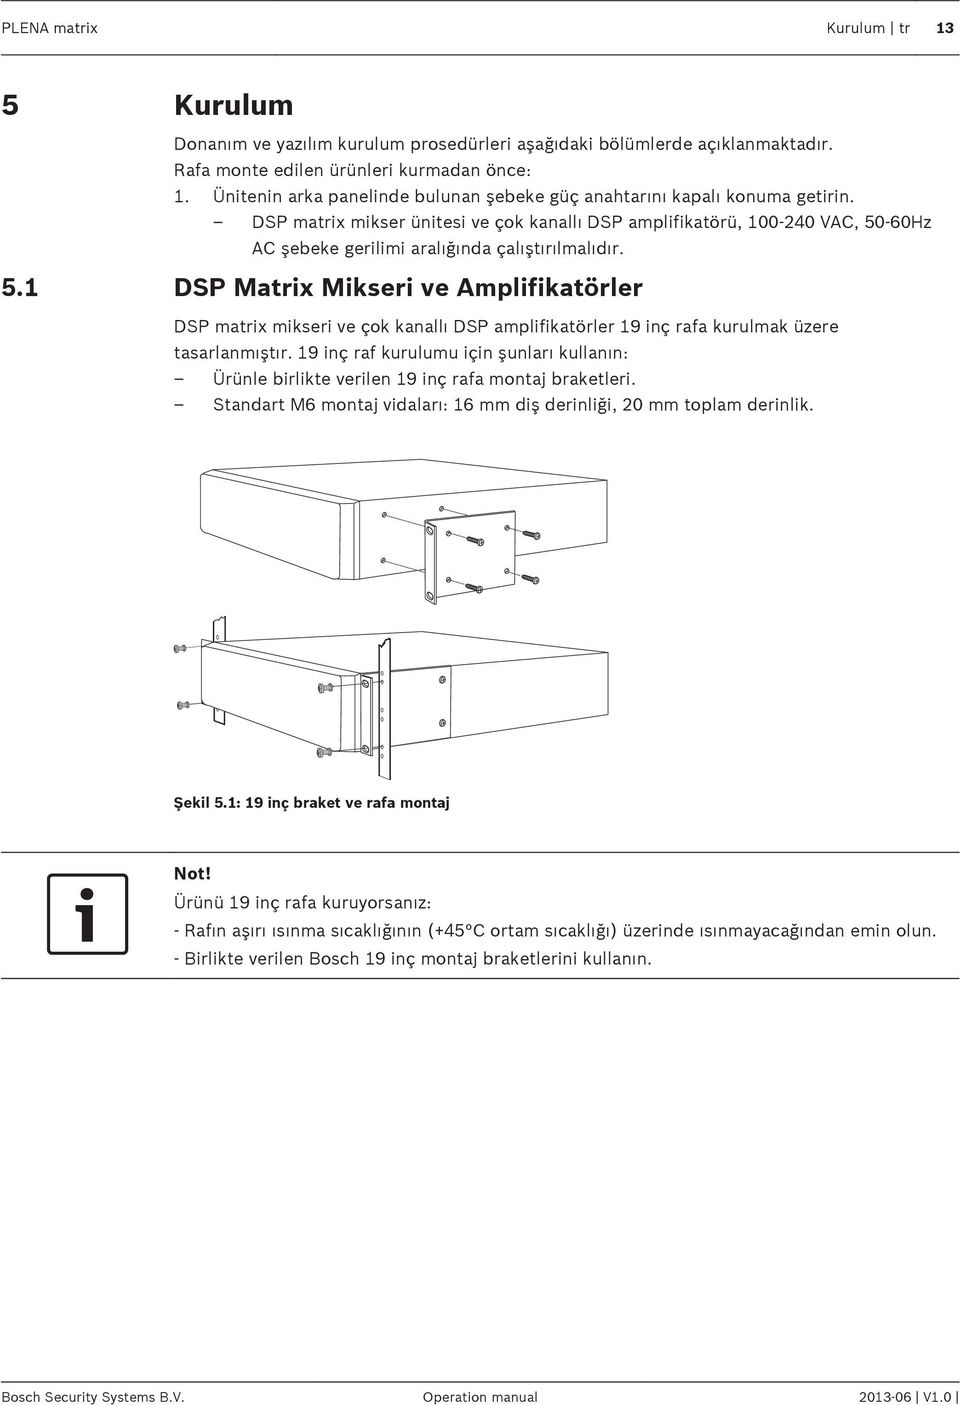 DSP matrix mikser ünitesi ve çok kanallı DSP amplifikatörü, 100 240 VAC, 50